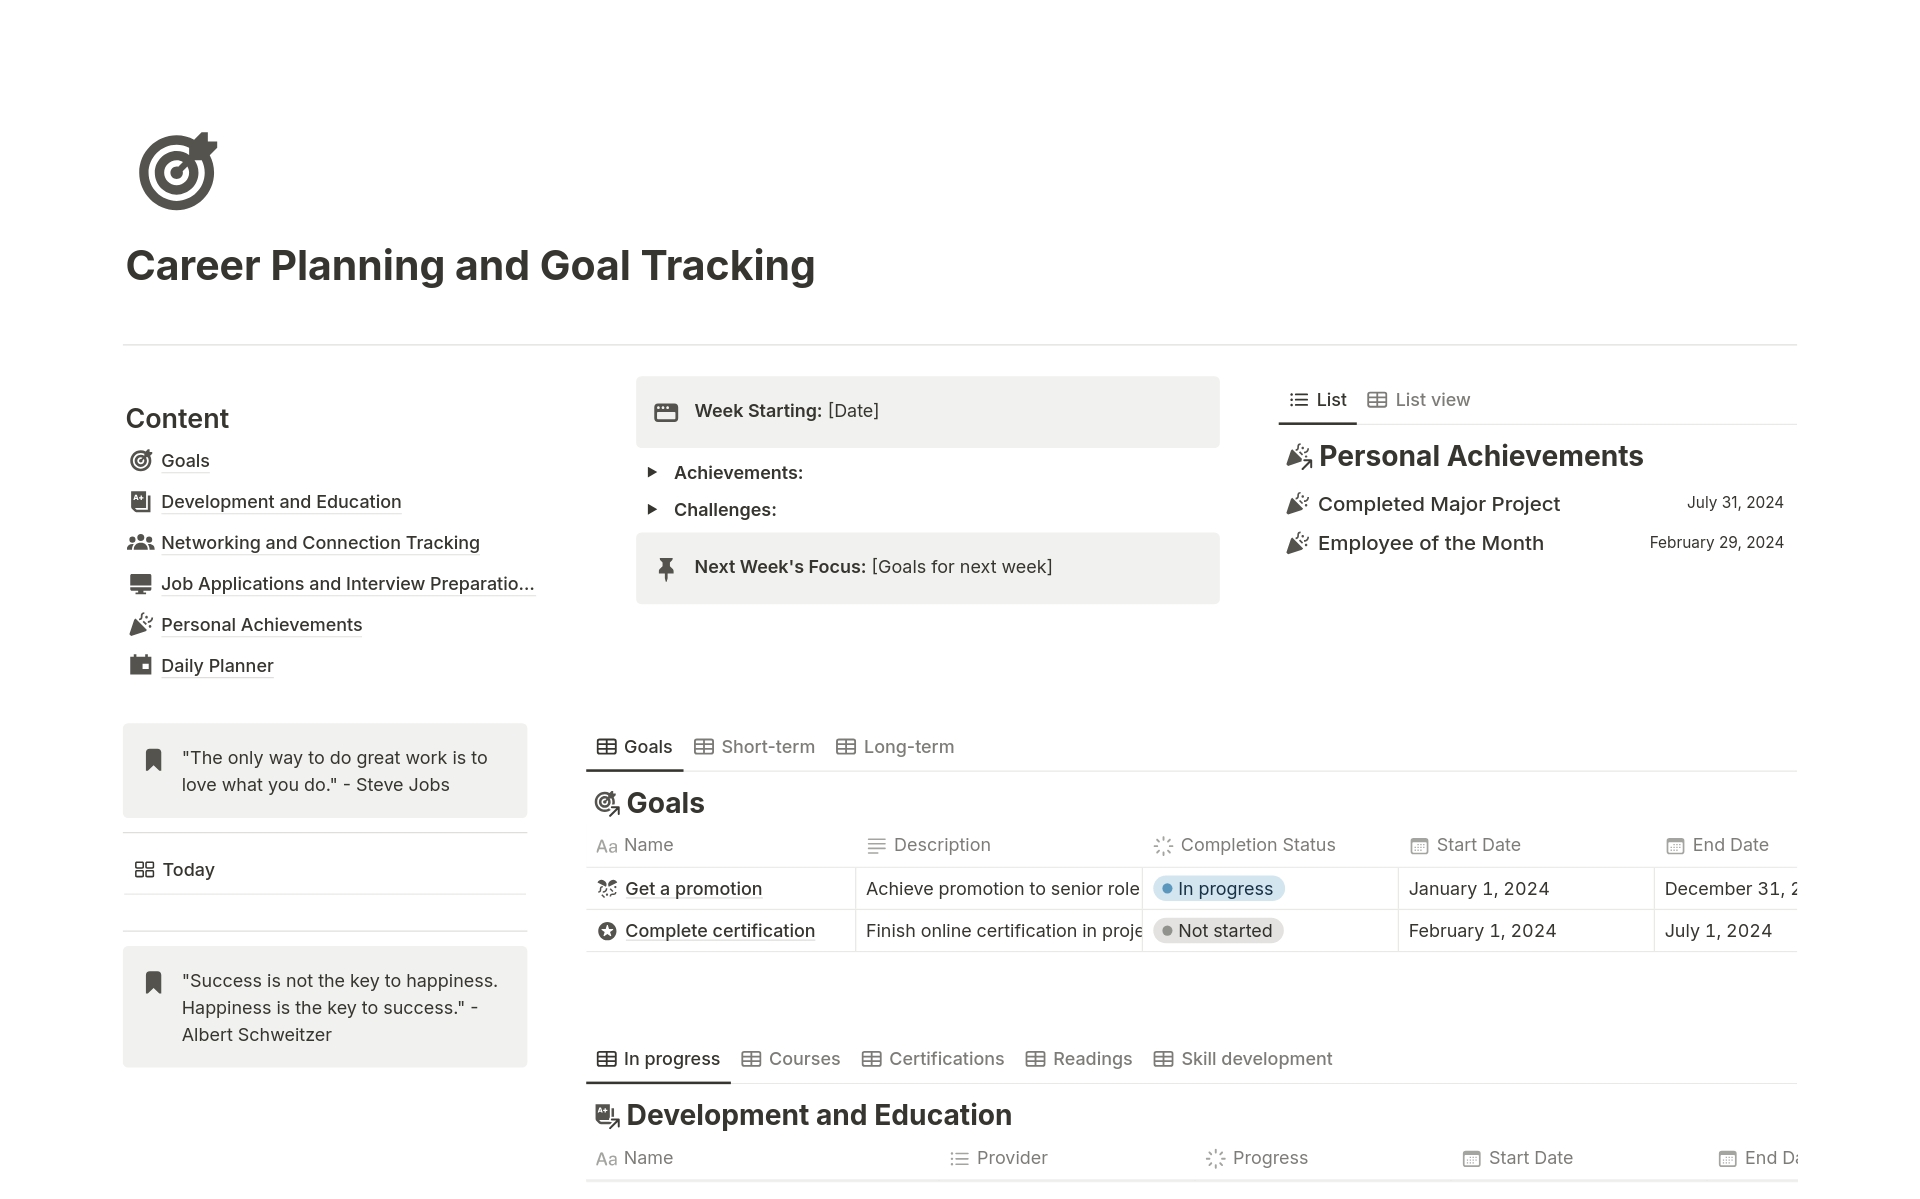 Vista previa de una plantilla para Career Planning and Goal Tracking